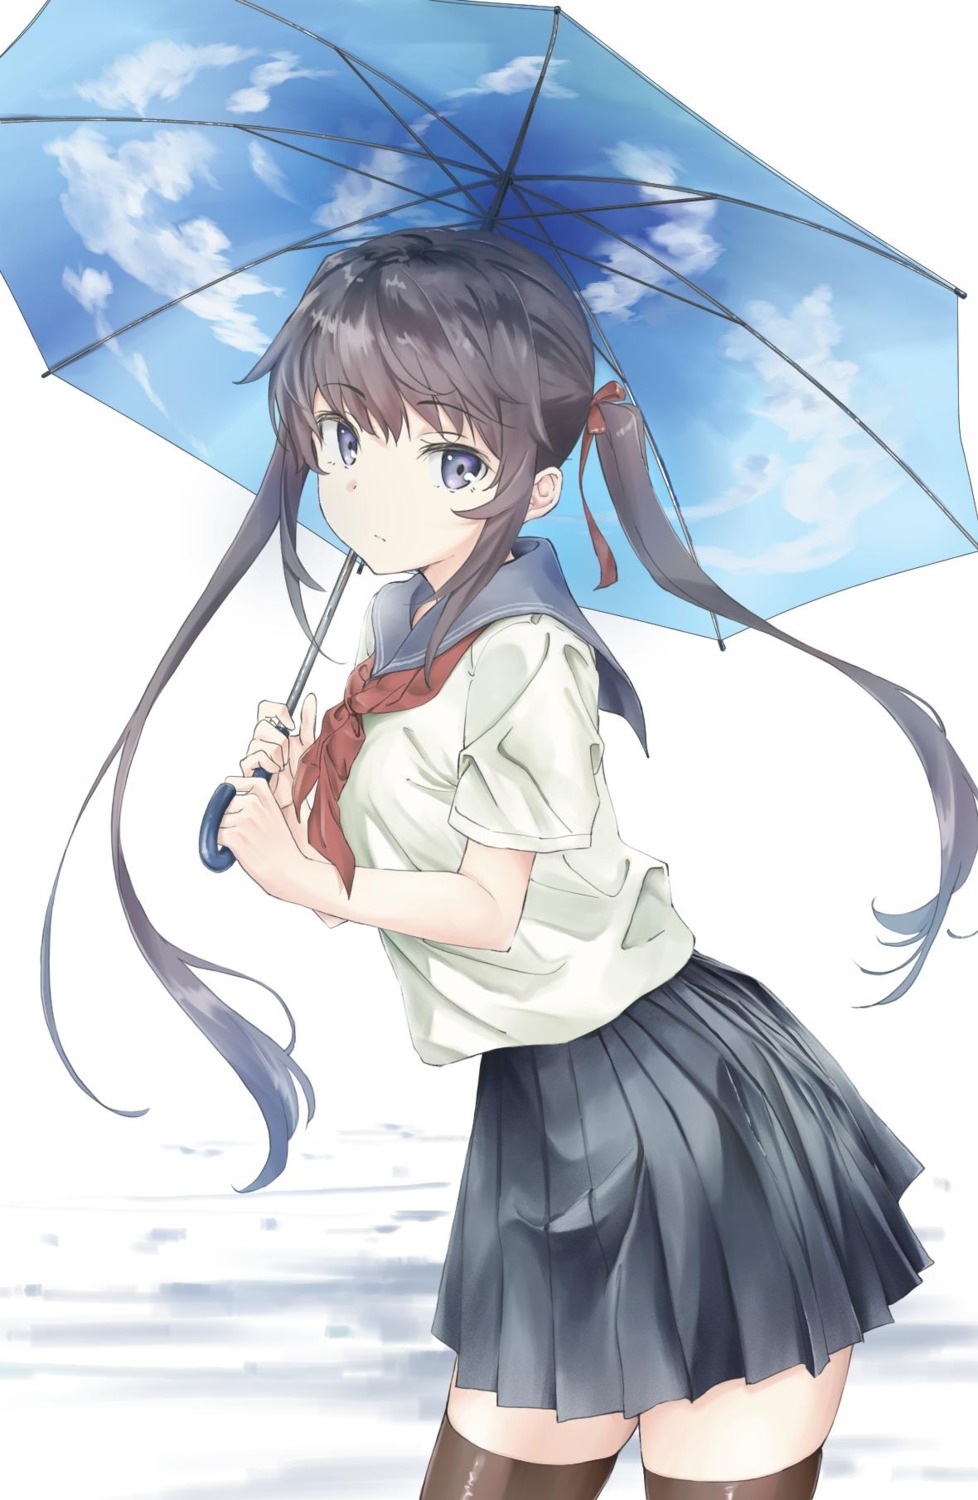 anno_masato seifuku thighhighs umbrella